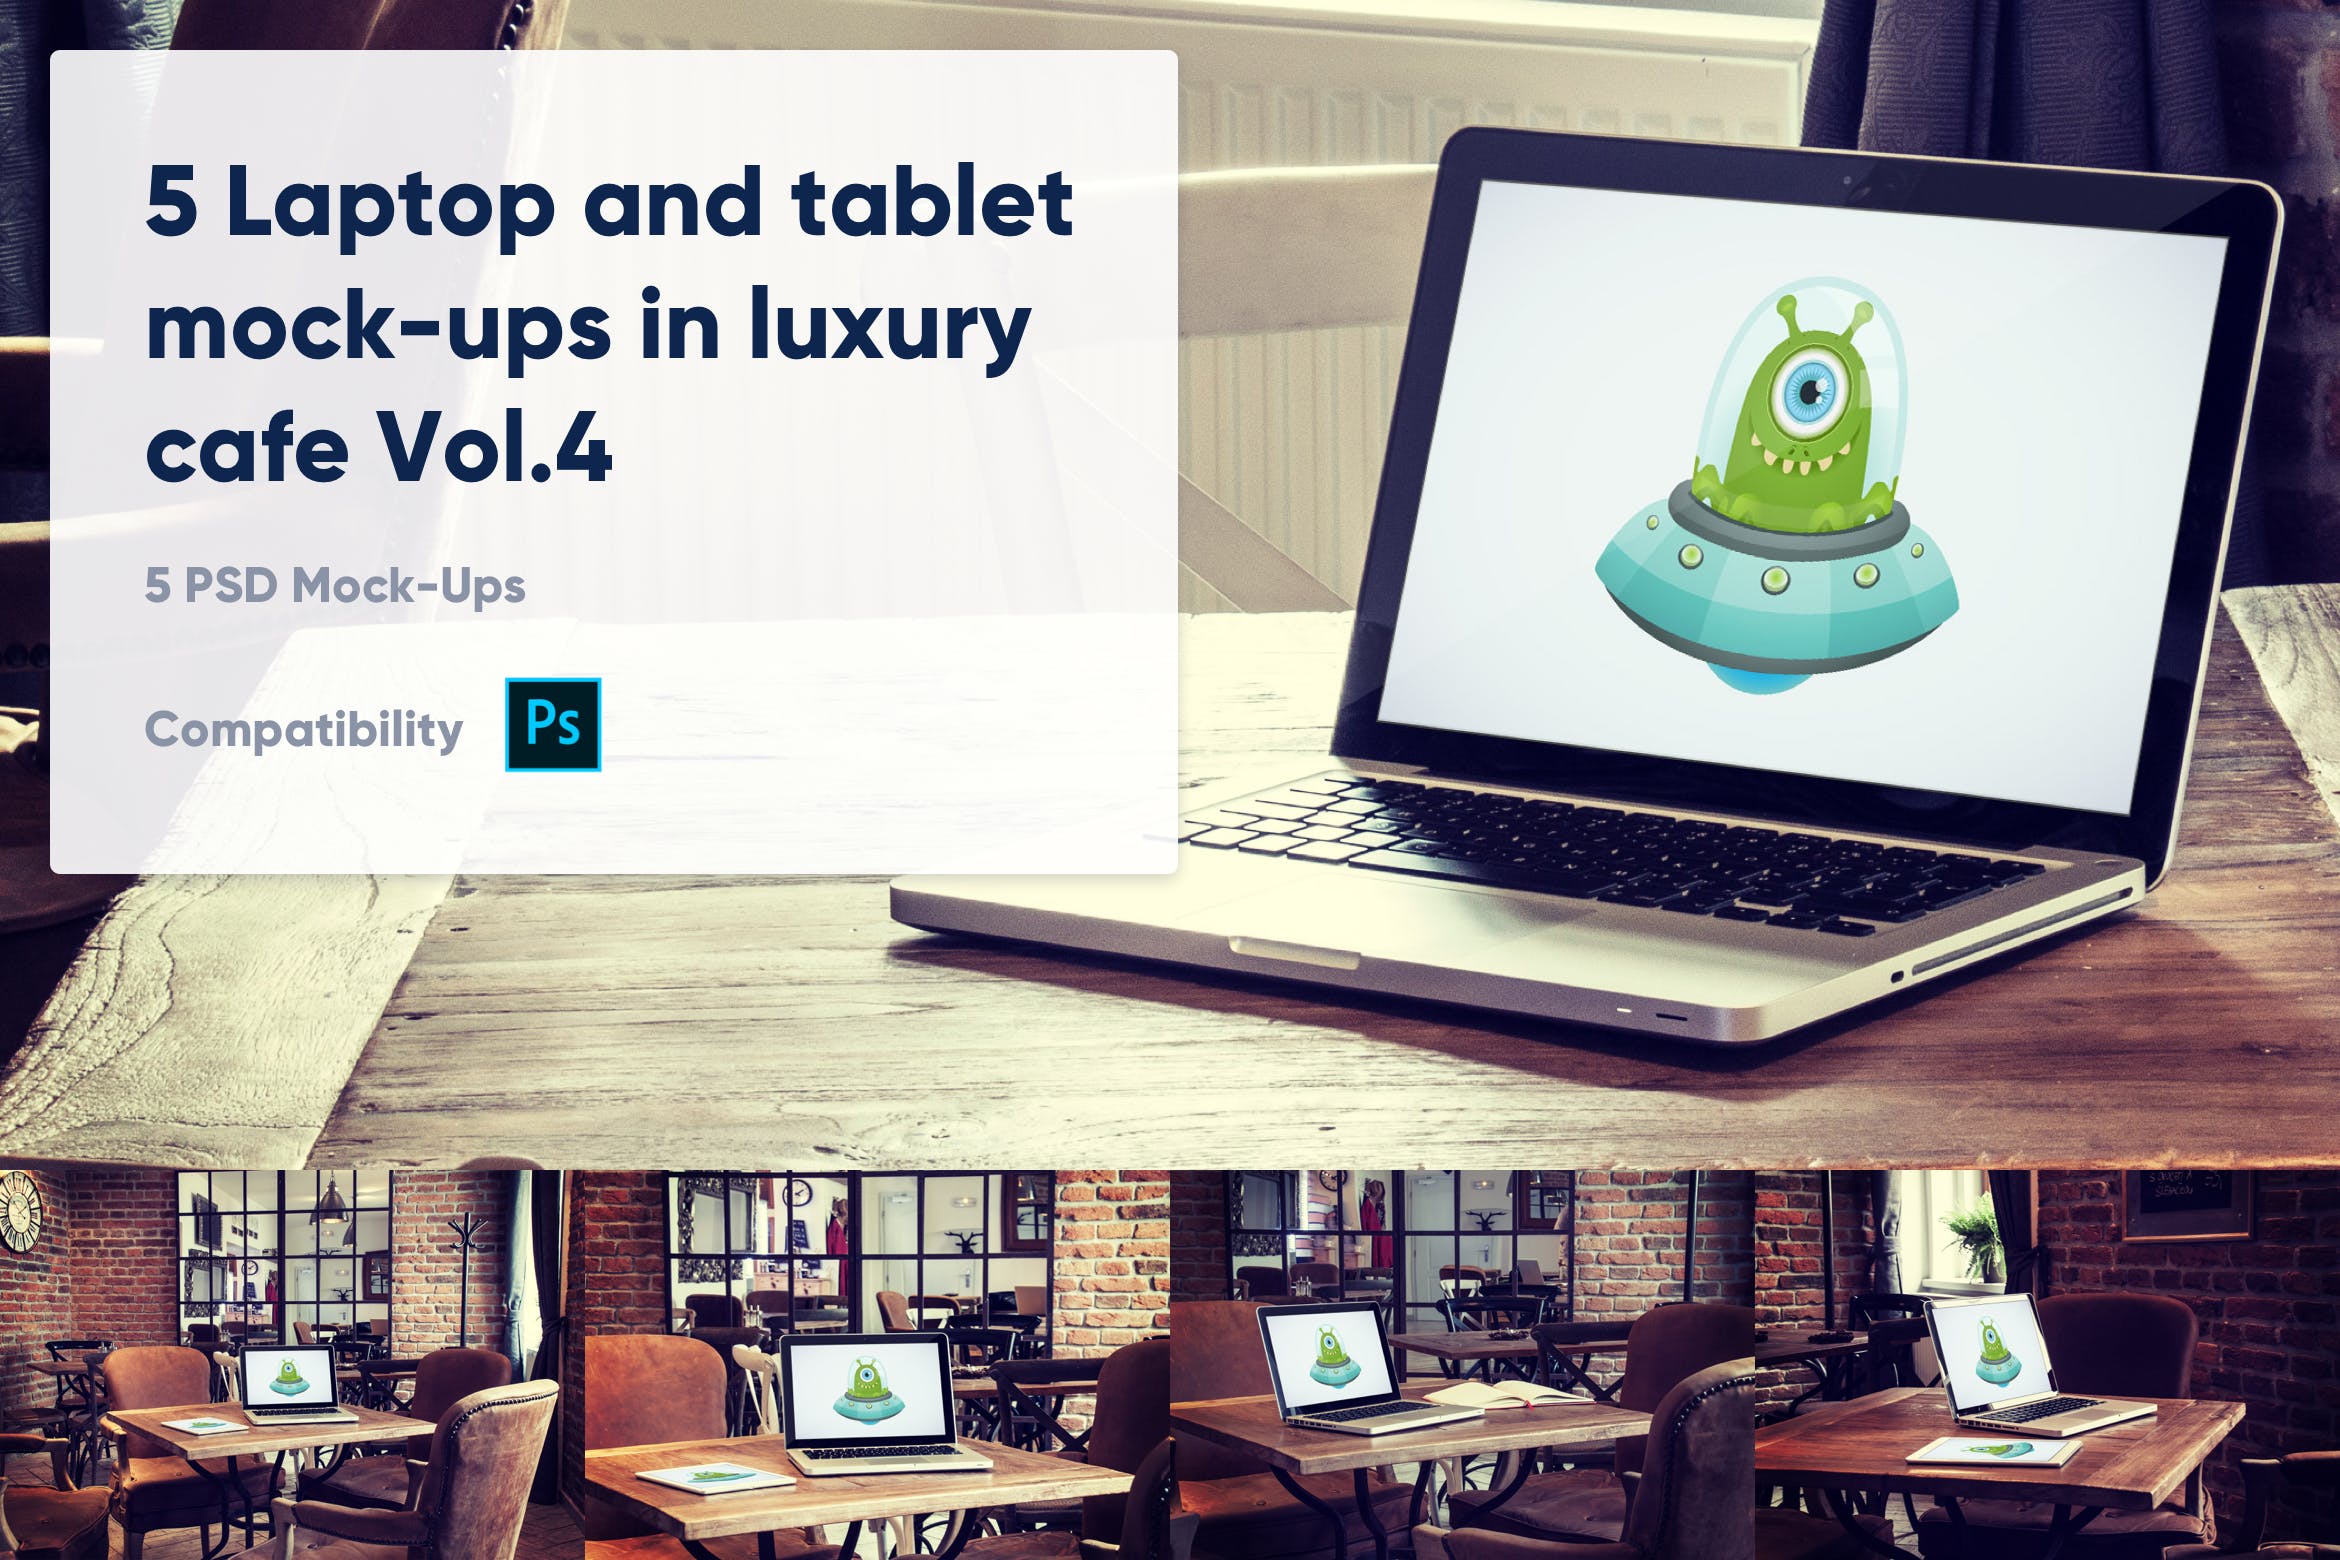 咖啡店场景MacBook&iPad屏幕预览第一素材精选样机模板v4 5 Laptop and tablet mock-ups in cafe Vol. 4插图